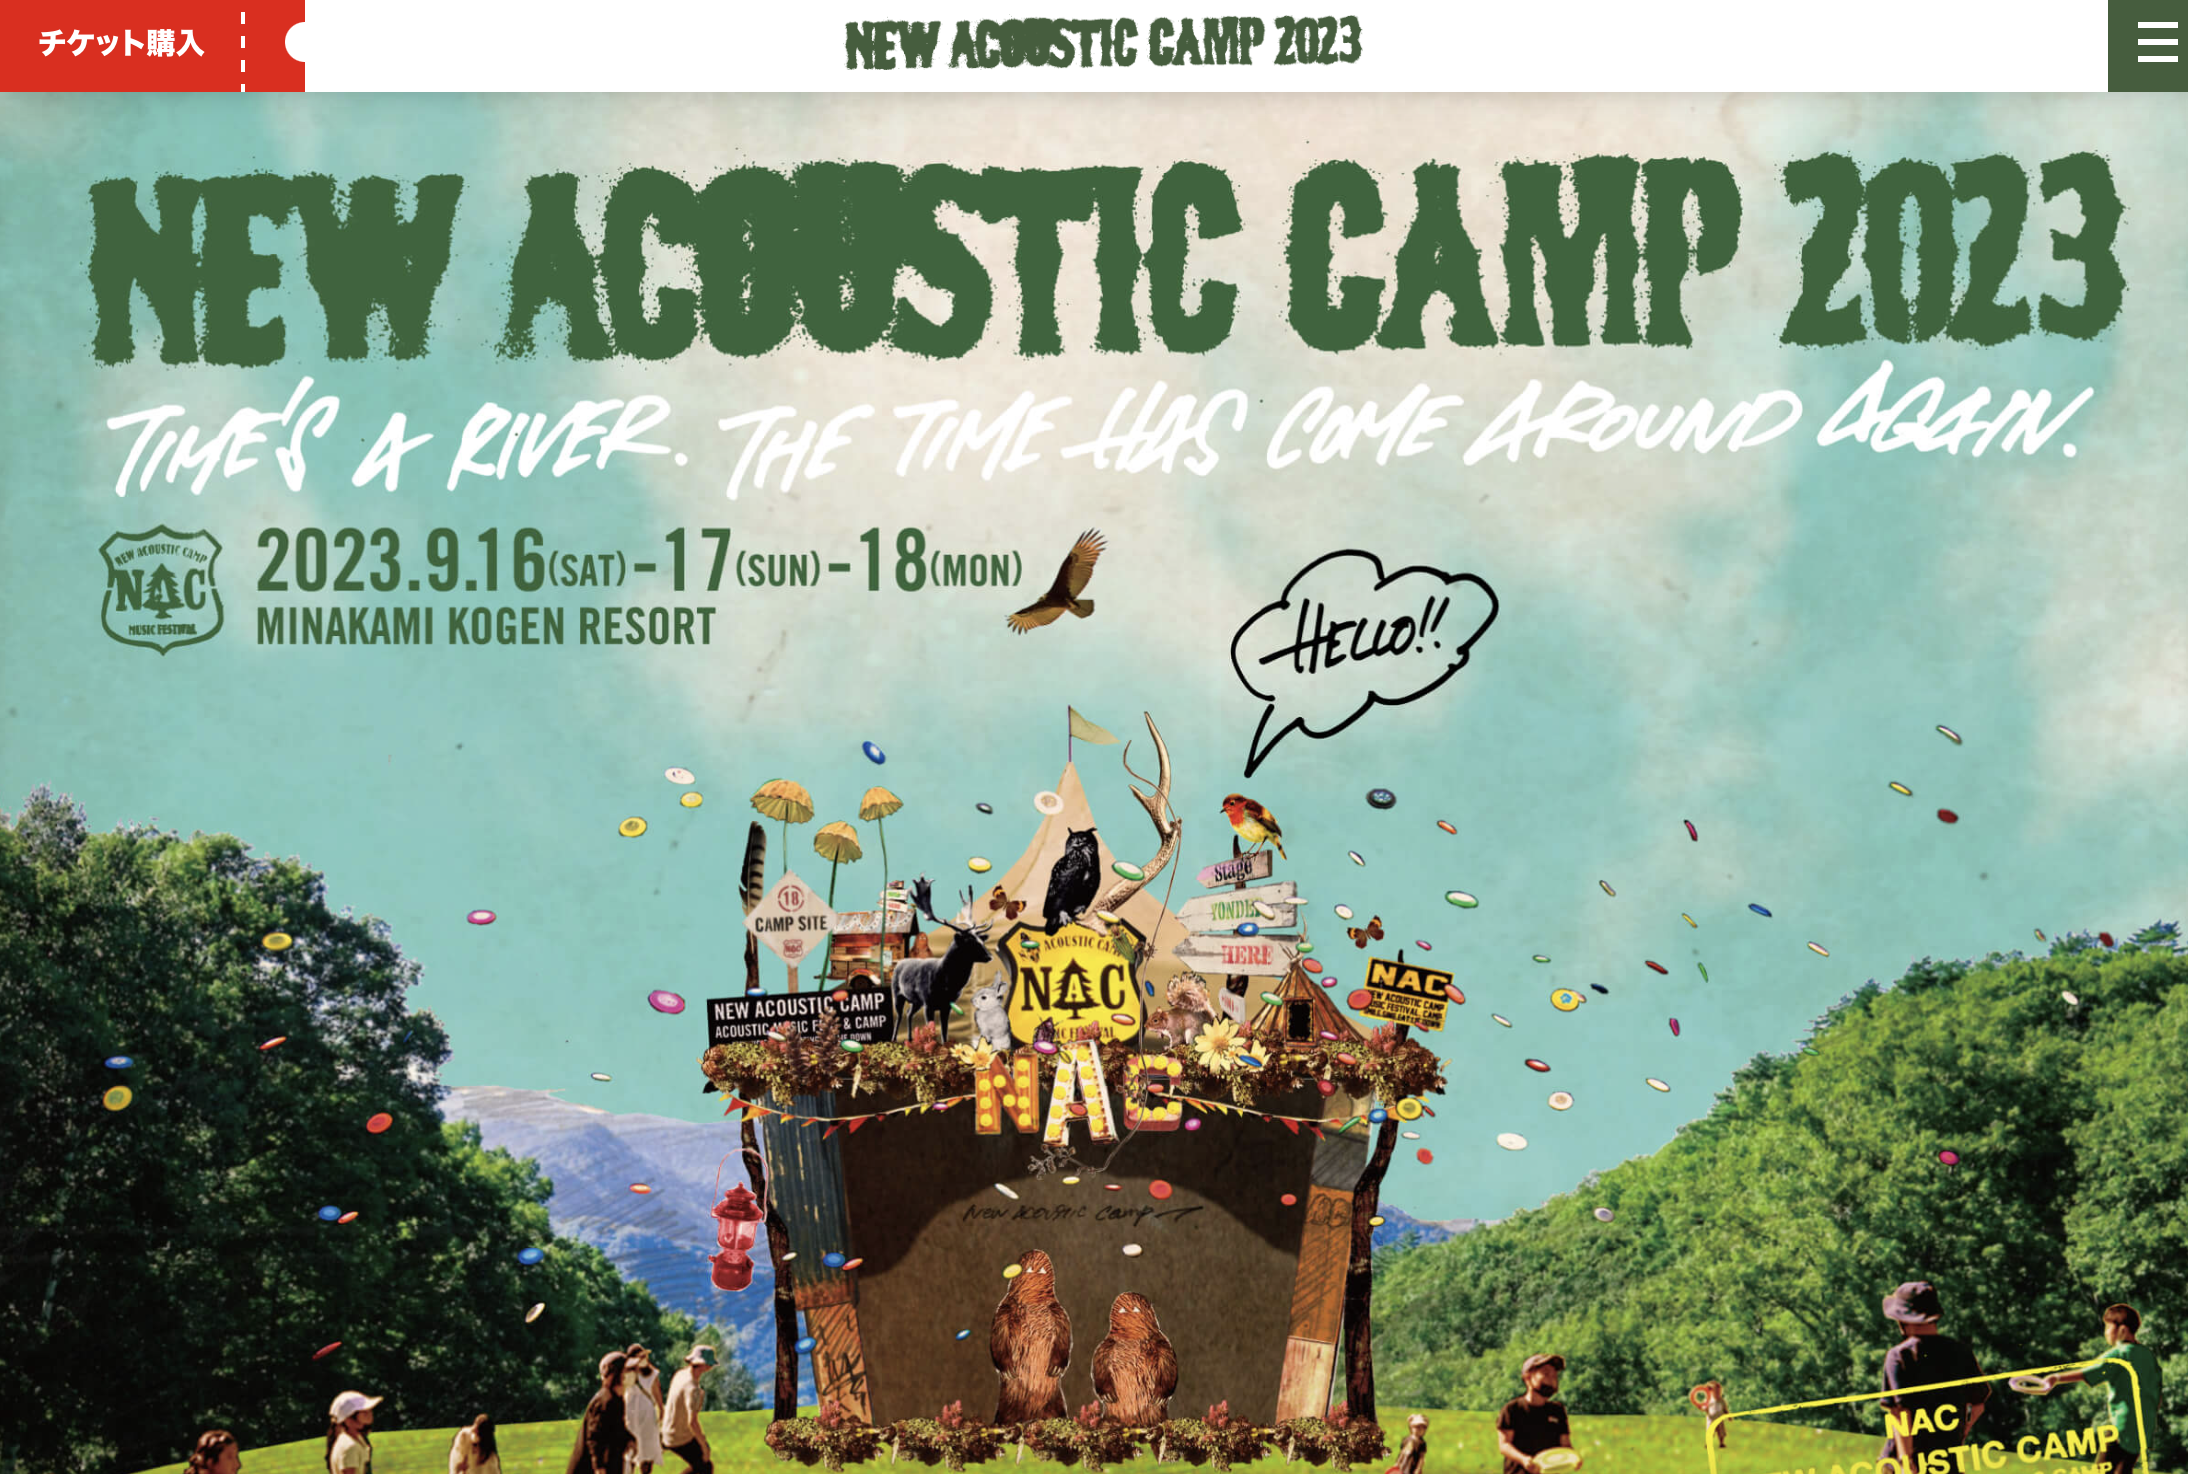 New Acoustic Camp 2023 / WEB、SNS、PR、OFFICIAL BAR